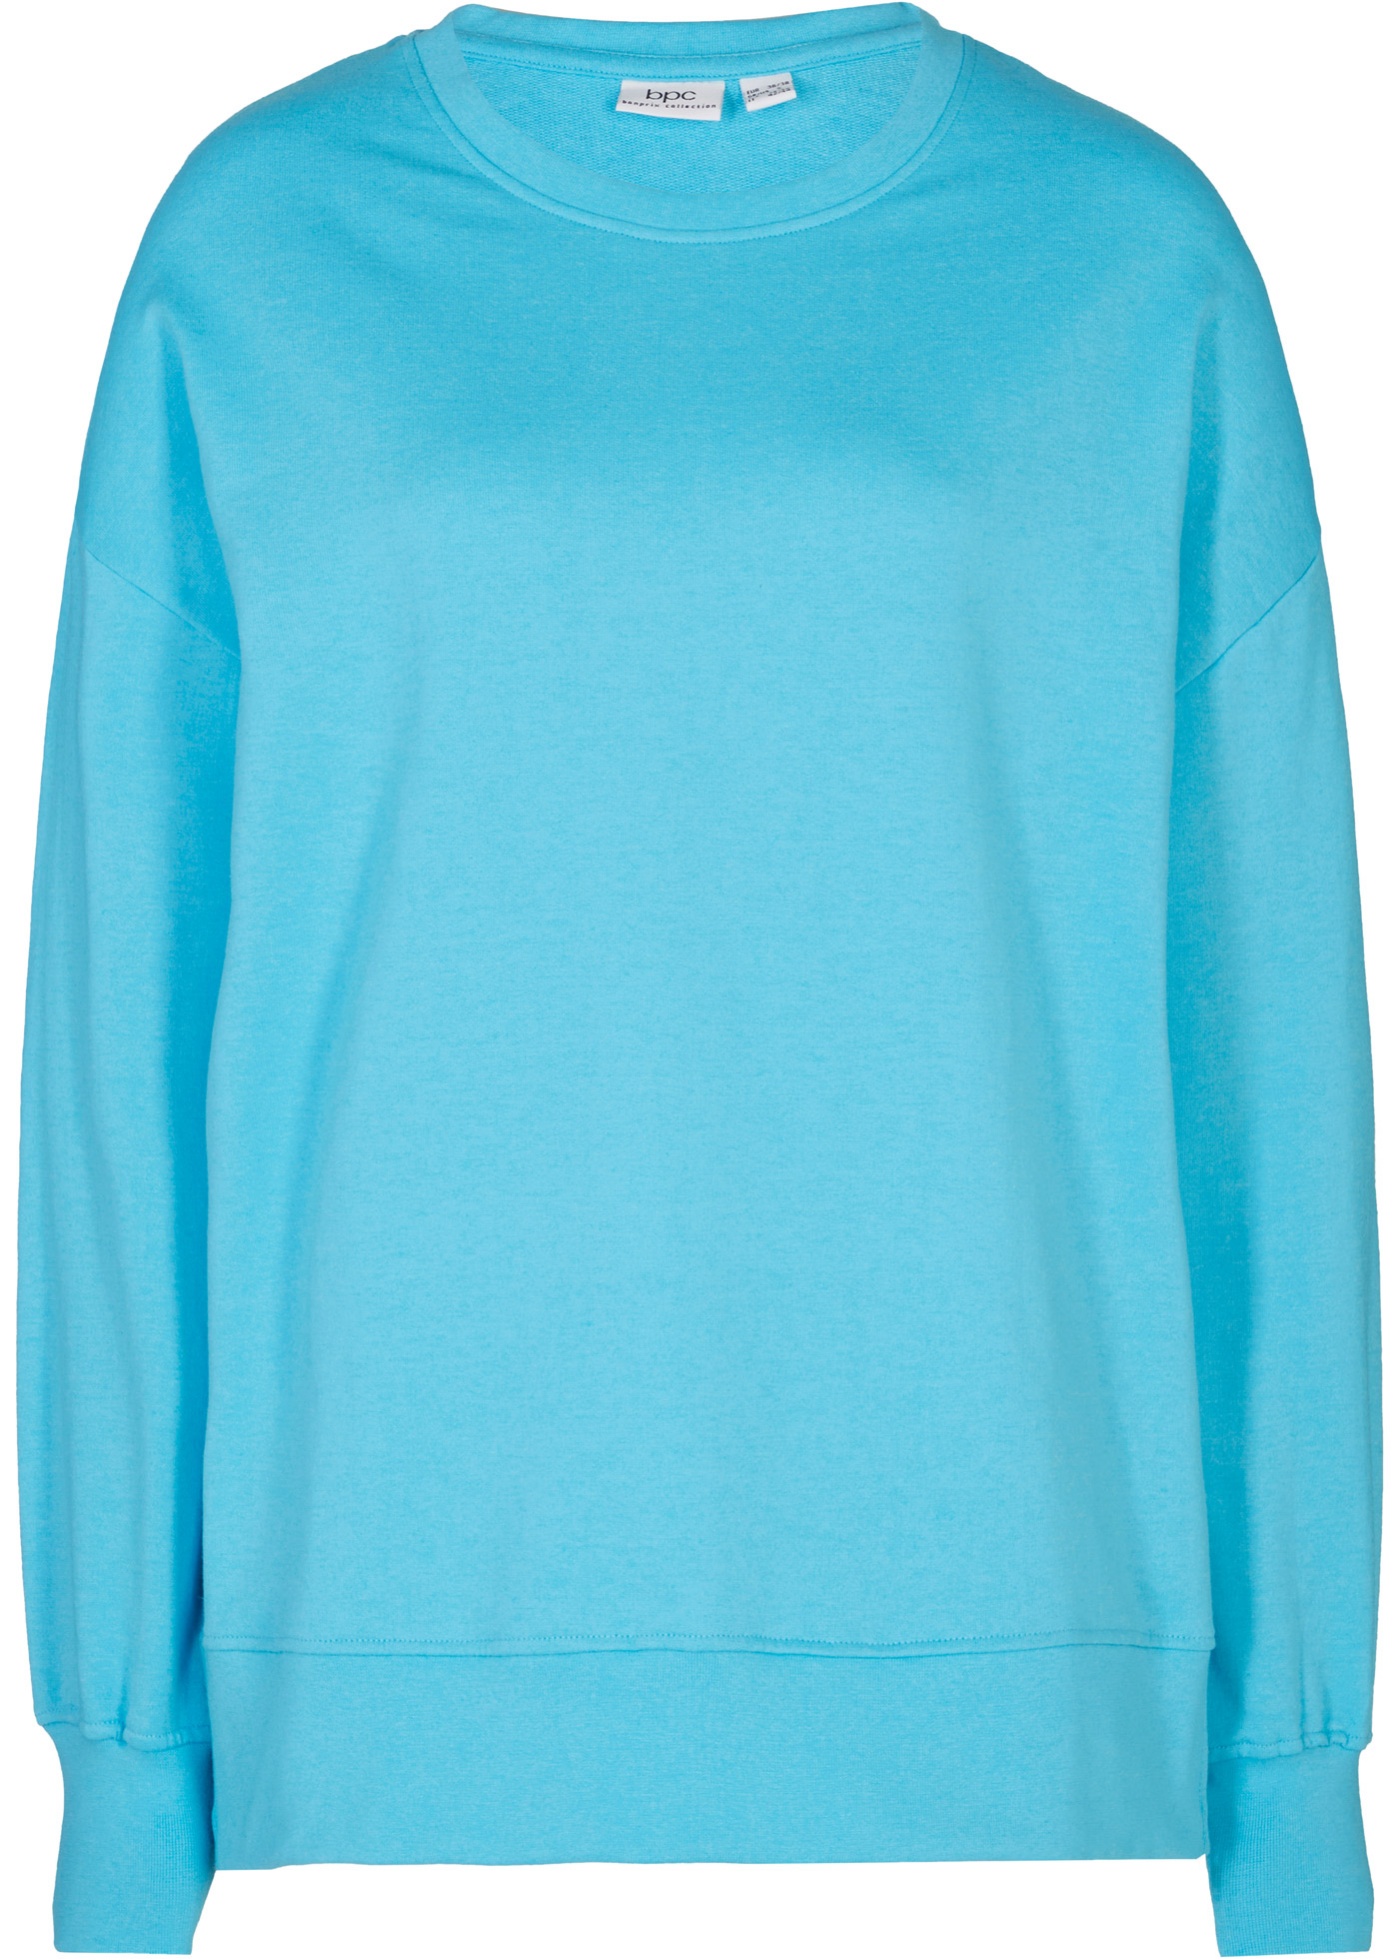 Bequemes Sweatshirt mit modischen Reißverschluss-Schlitzen an den Seiten. (96246195) in karibikblau